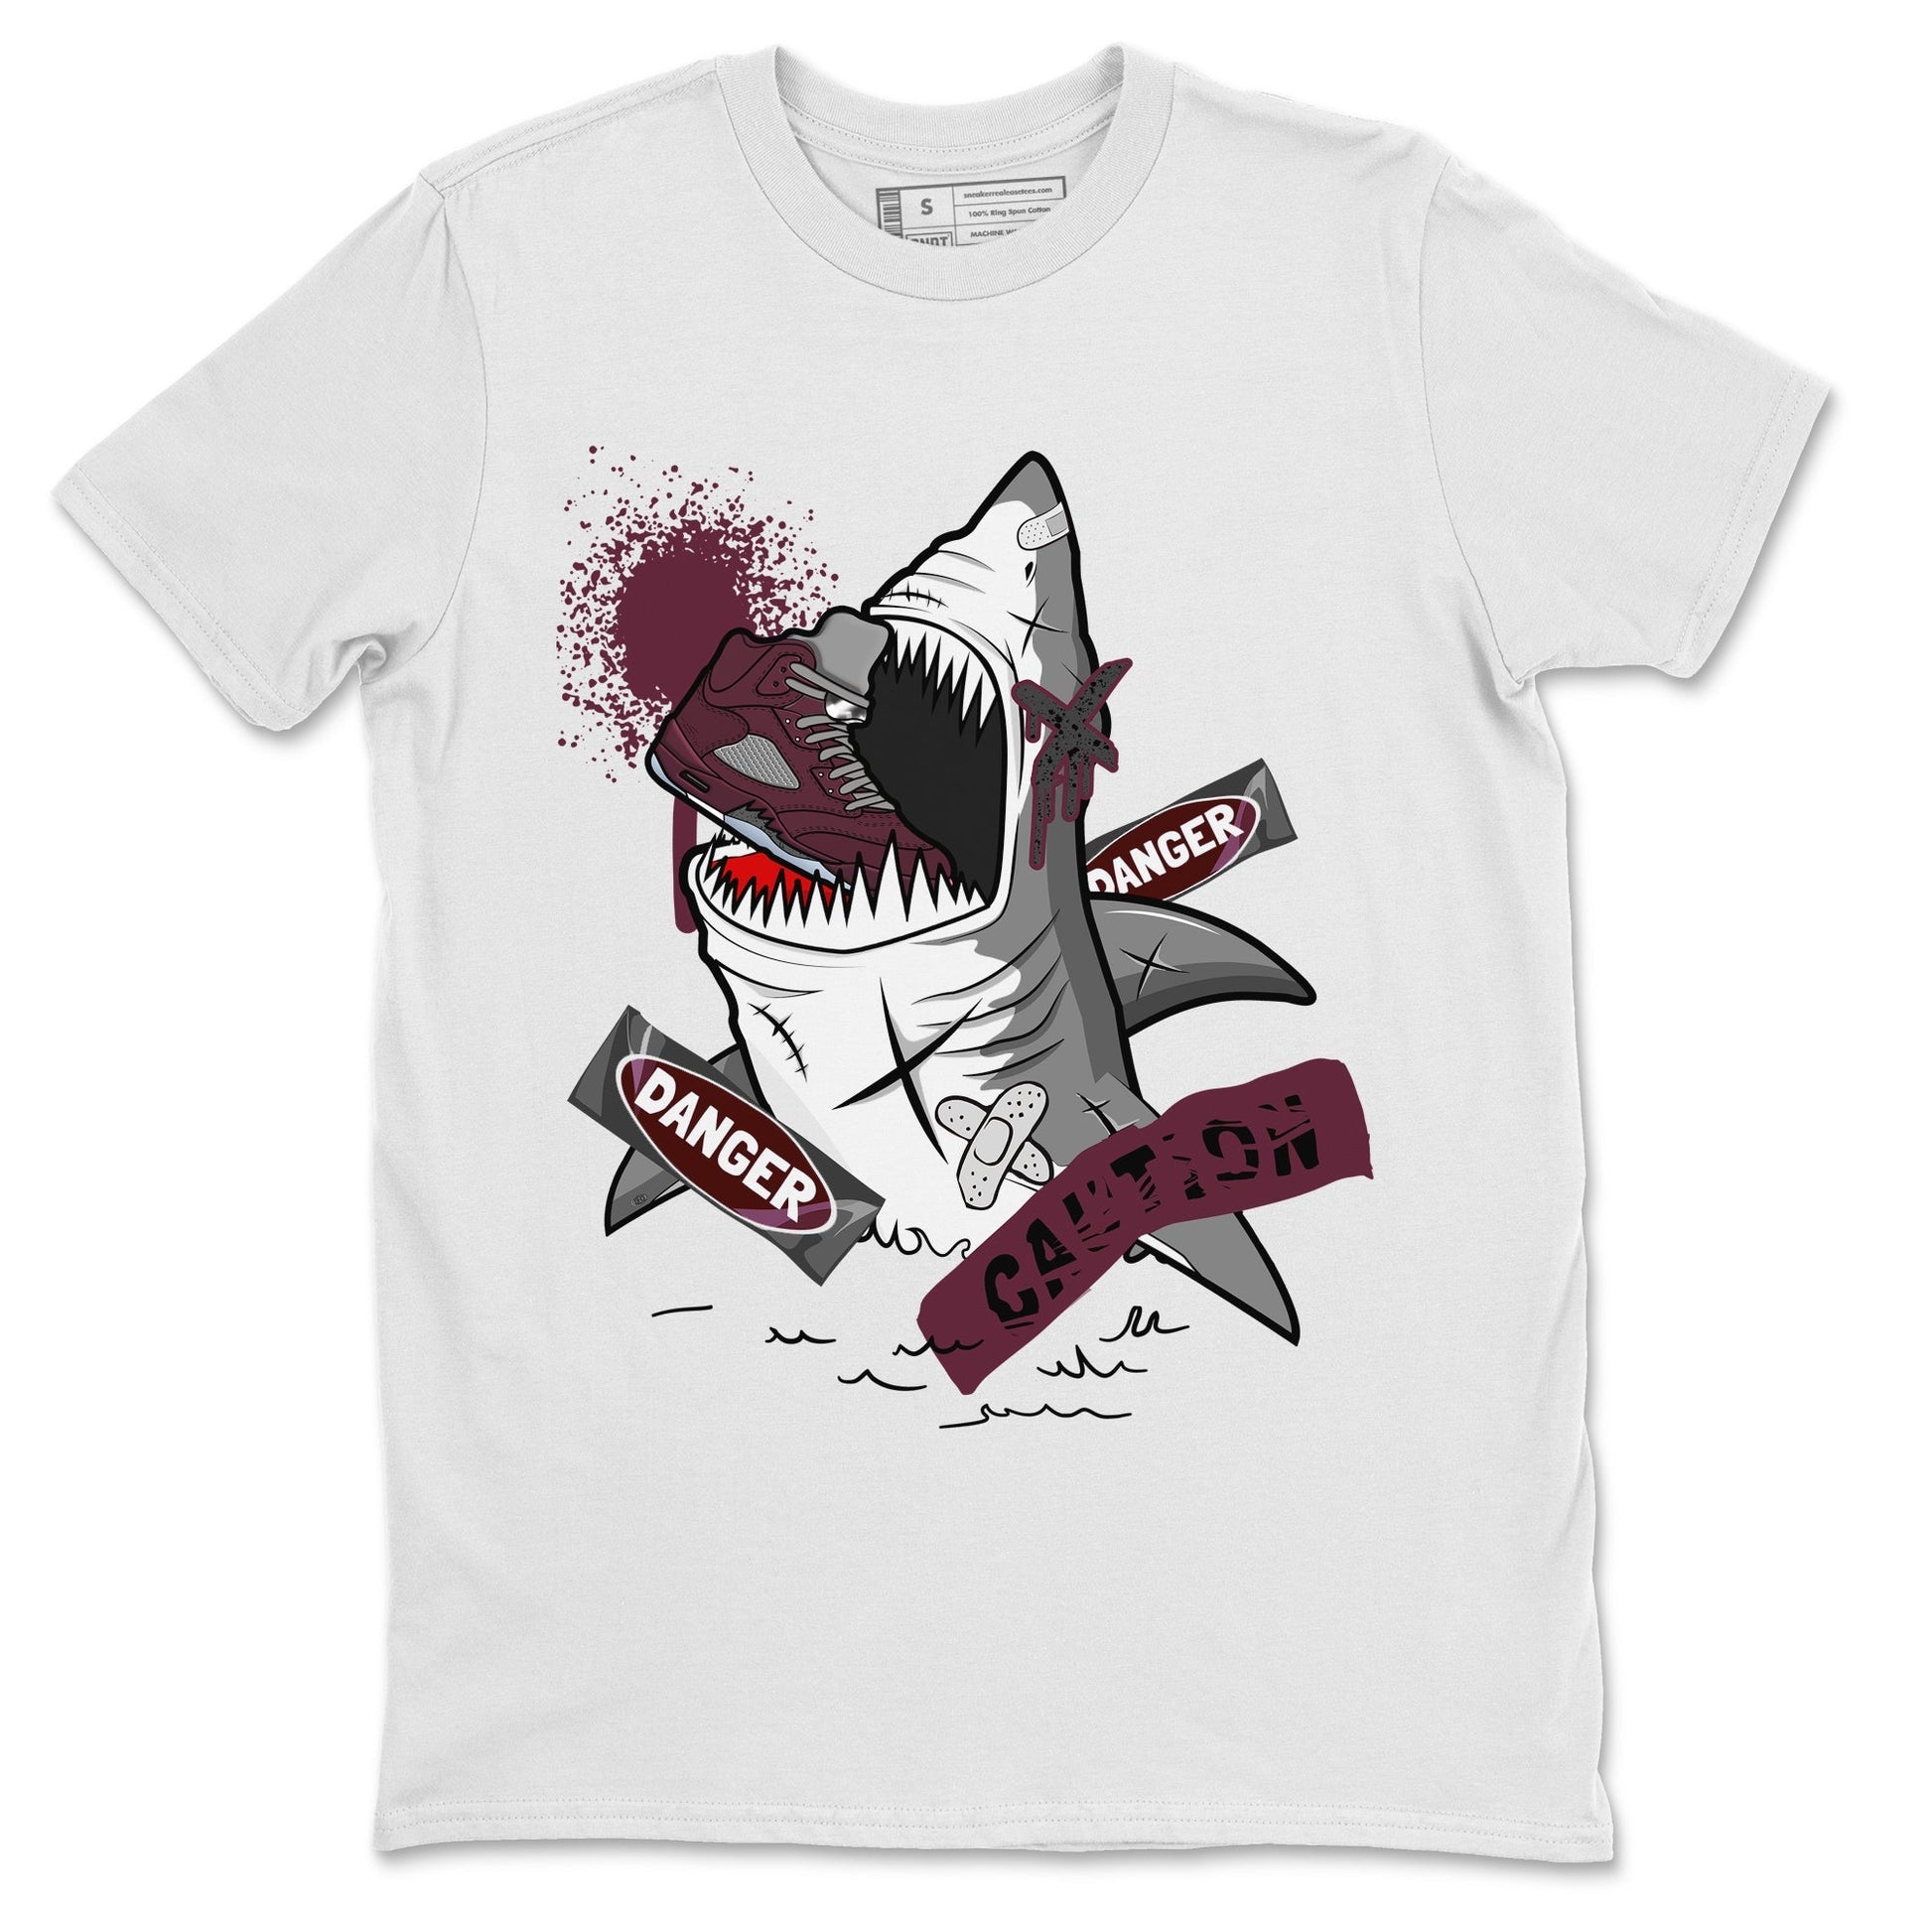 5s Burgundy shirt to match jordans Dangerous Shark Streetwear Sneaker Shirt Air Jordan 5 Burgundy Drip Gear Zone Sneaker Matching Clothing Unisex White 2 T-Shirt